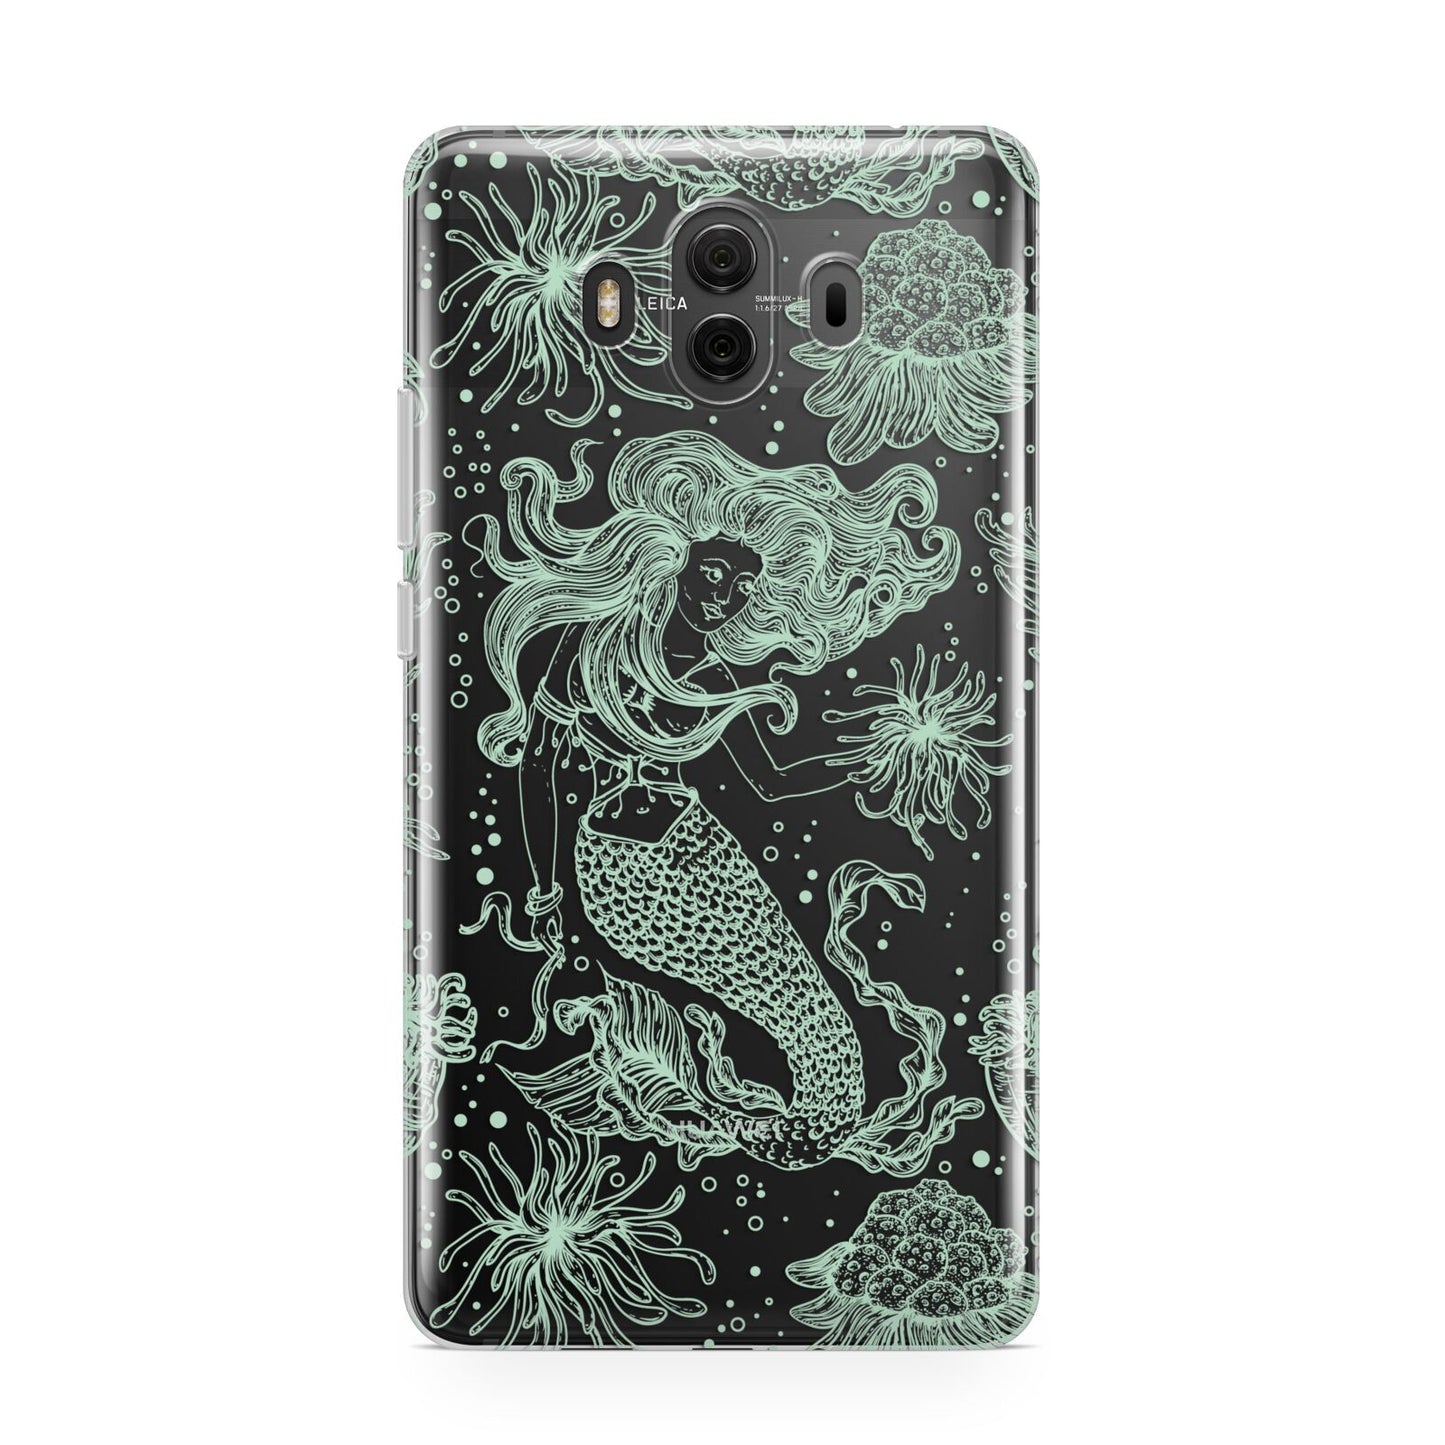 Sea Mermaid Huawei Mate 10 Protective Phone Case